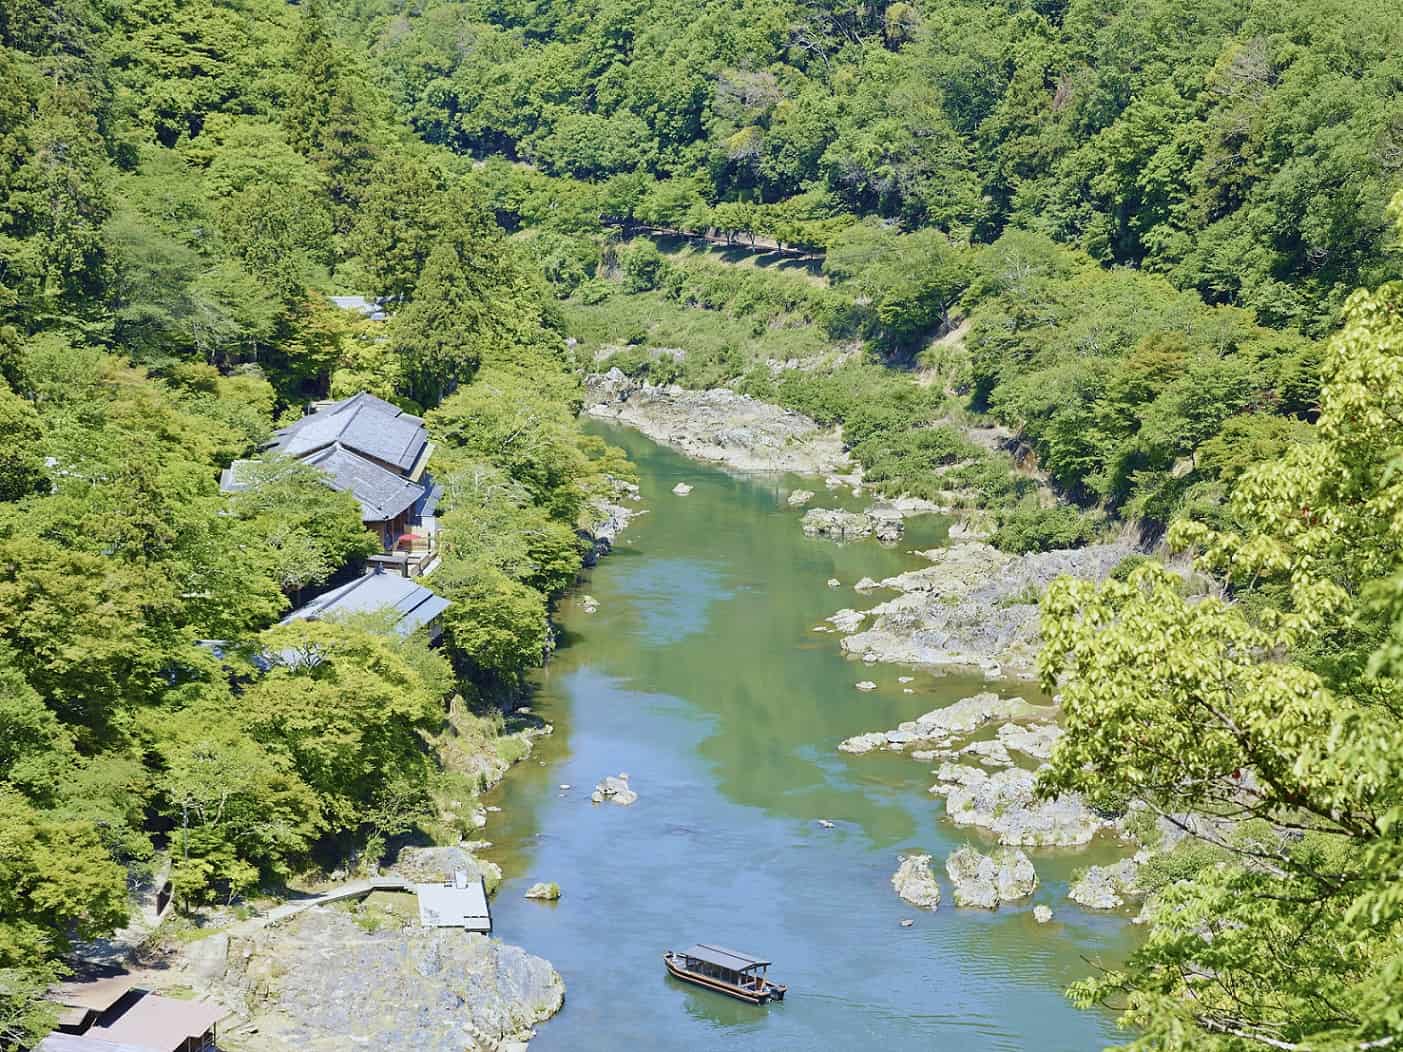 【星のや京都】奥嵐山で京文化に触れる久しぶりの優雅な一日~京都市内から車で約 30 分、3 密のない 25 室の日本旅館~